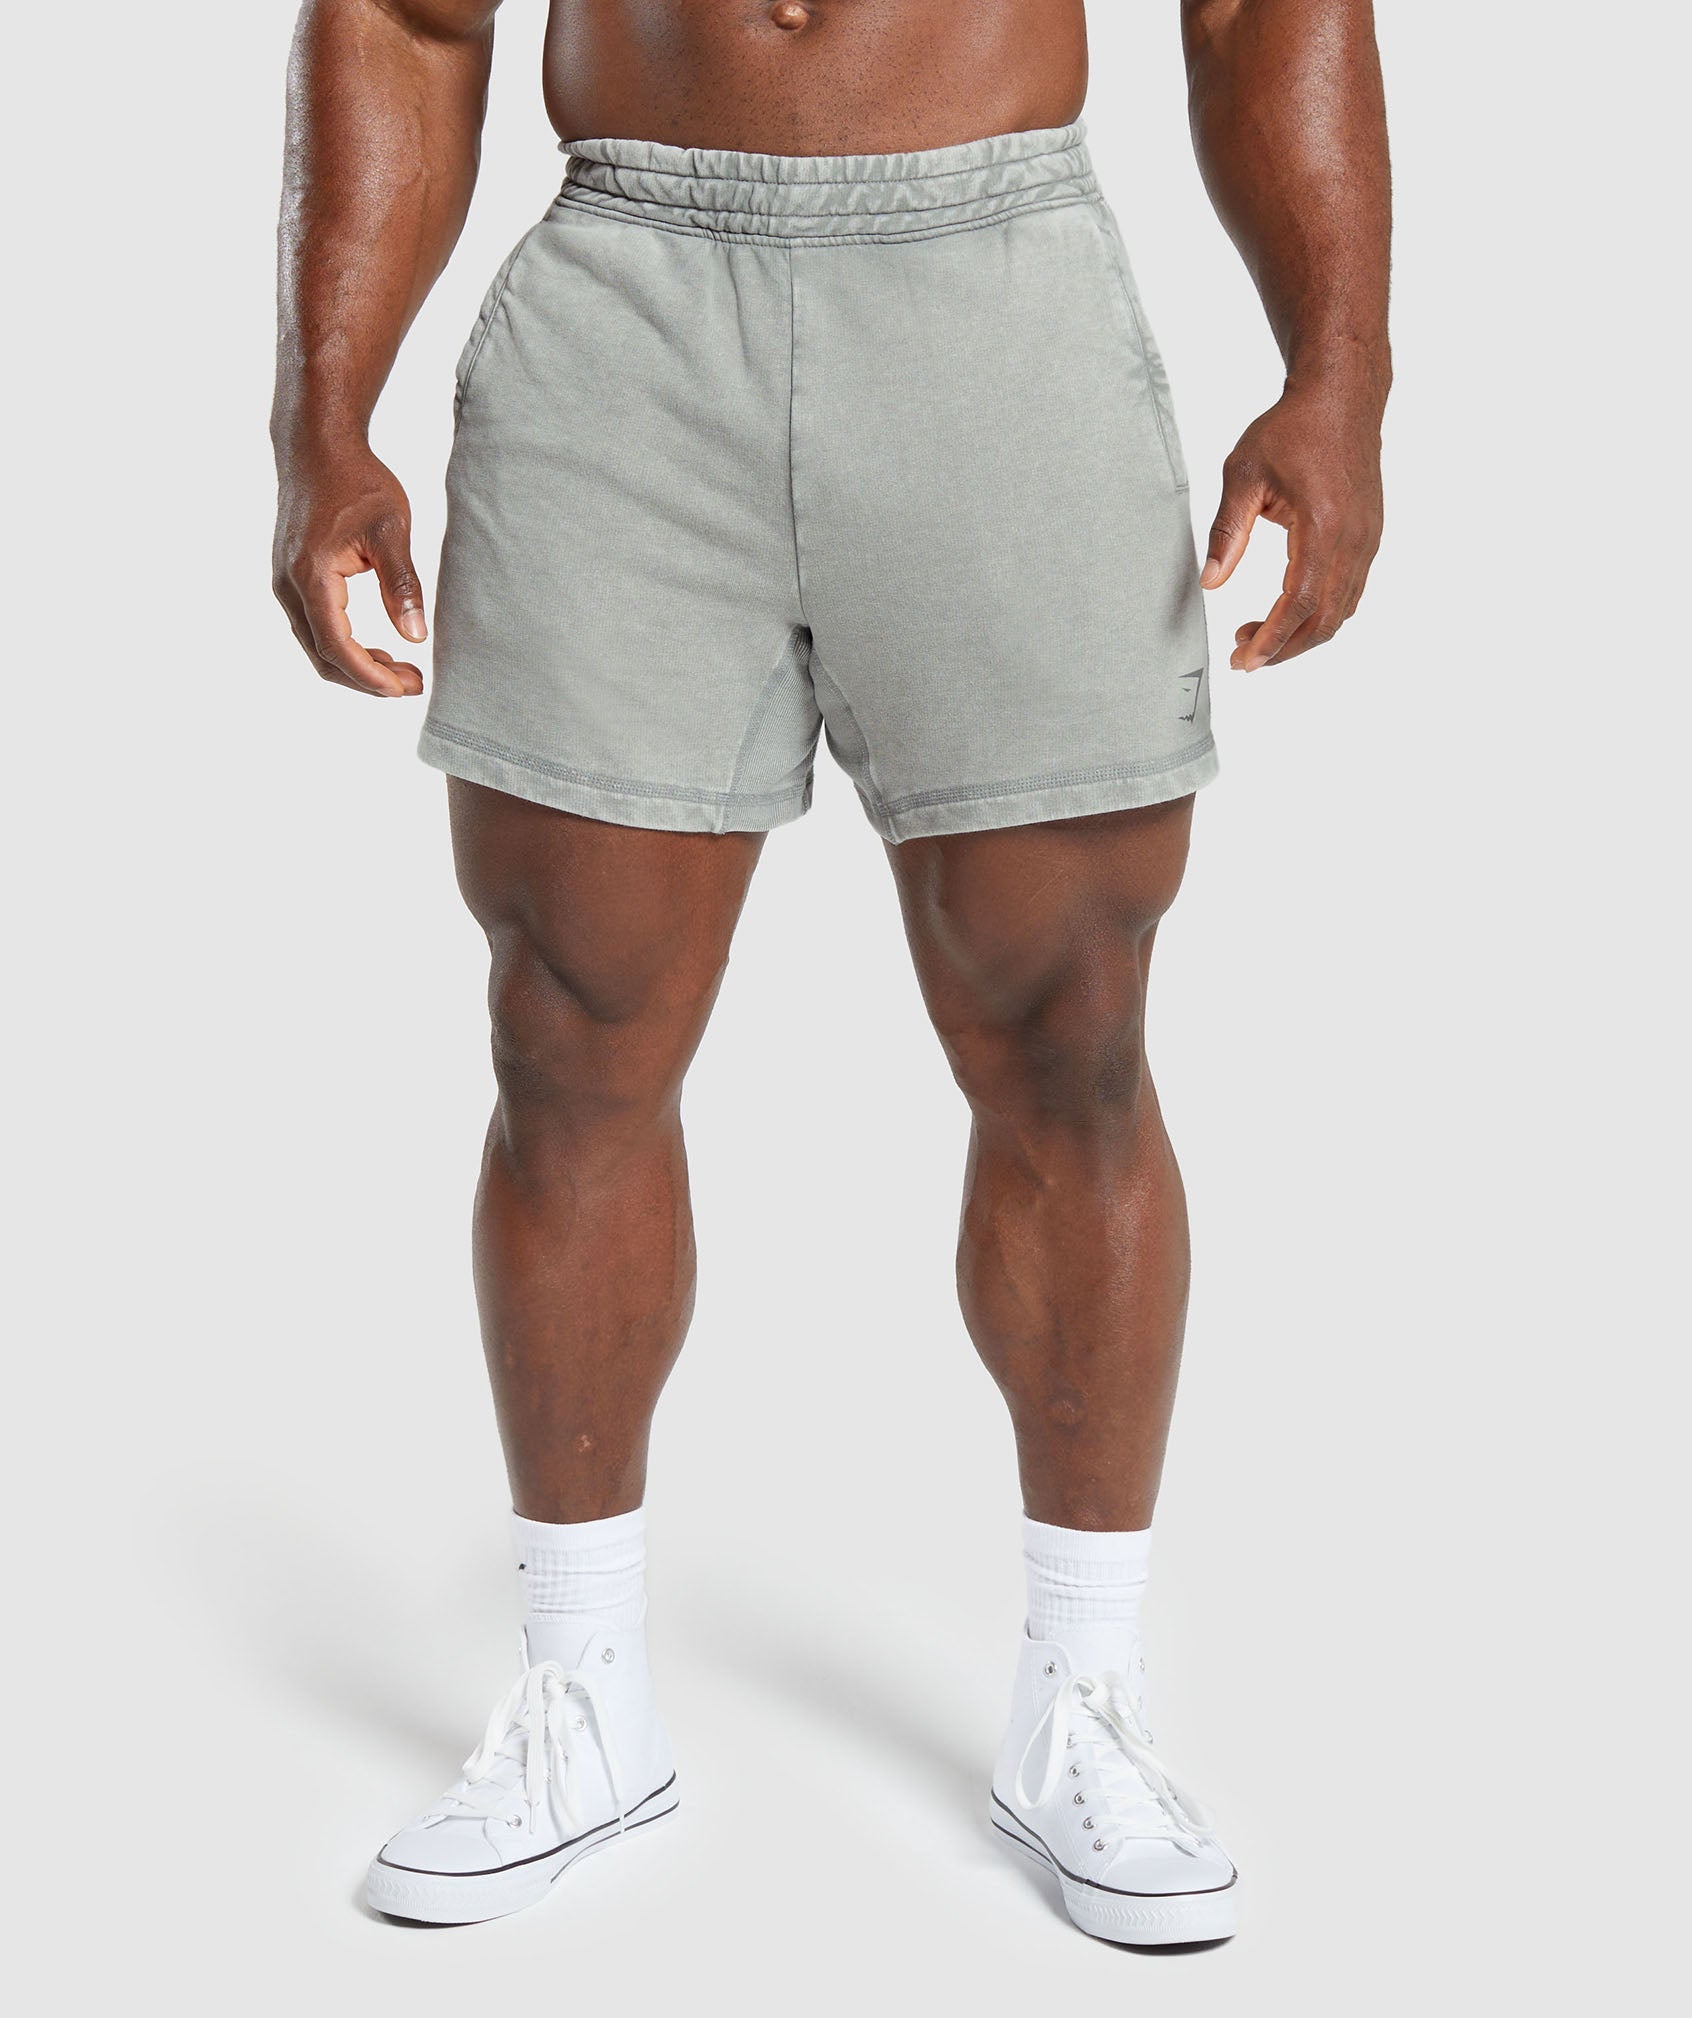 Heritage 5" Shorts